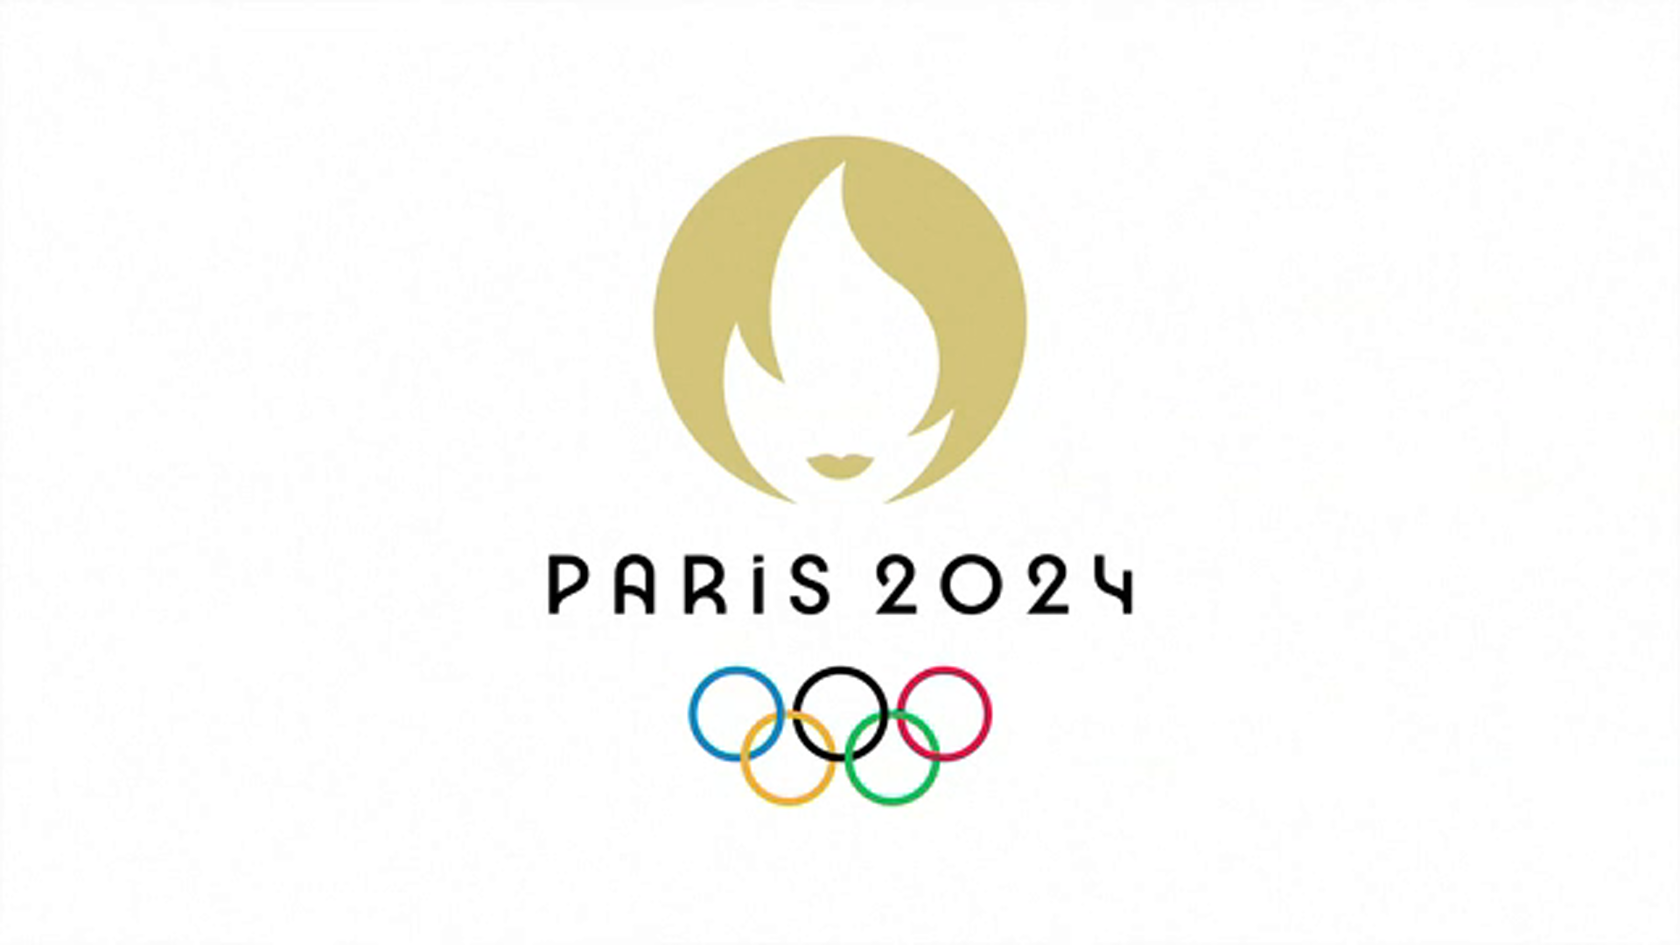 Олимпийские игры в Париже 2024. Олимпийских игр–2024 в Париже лого. Логотип олимпиады.